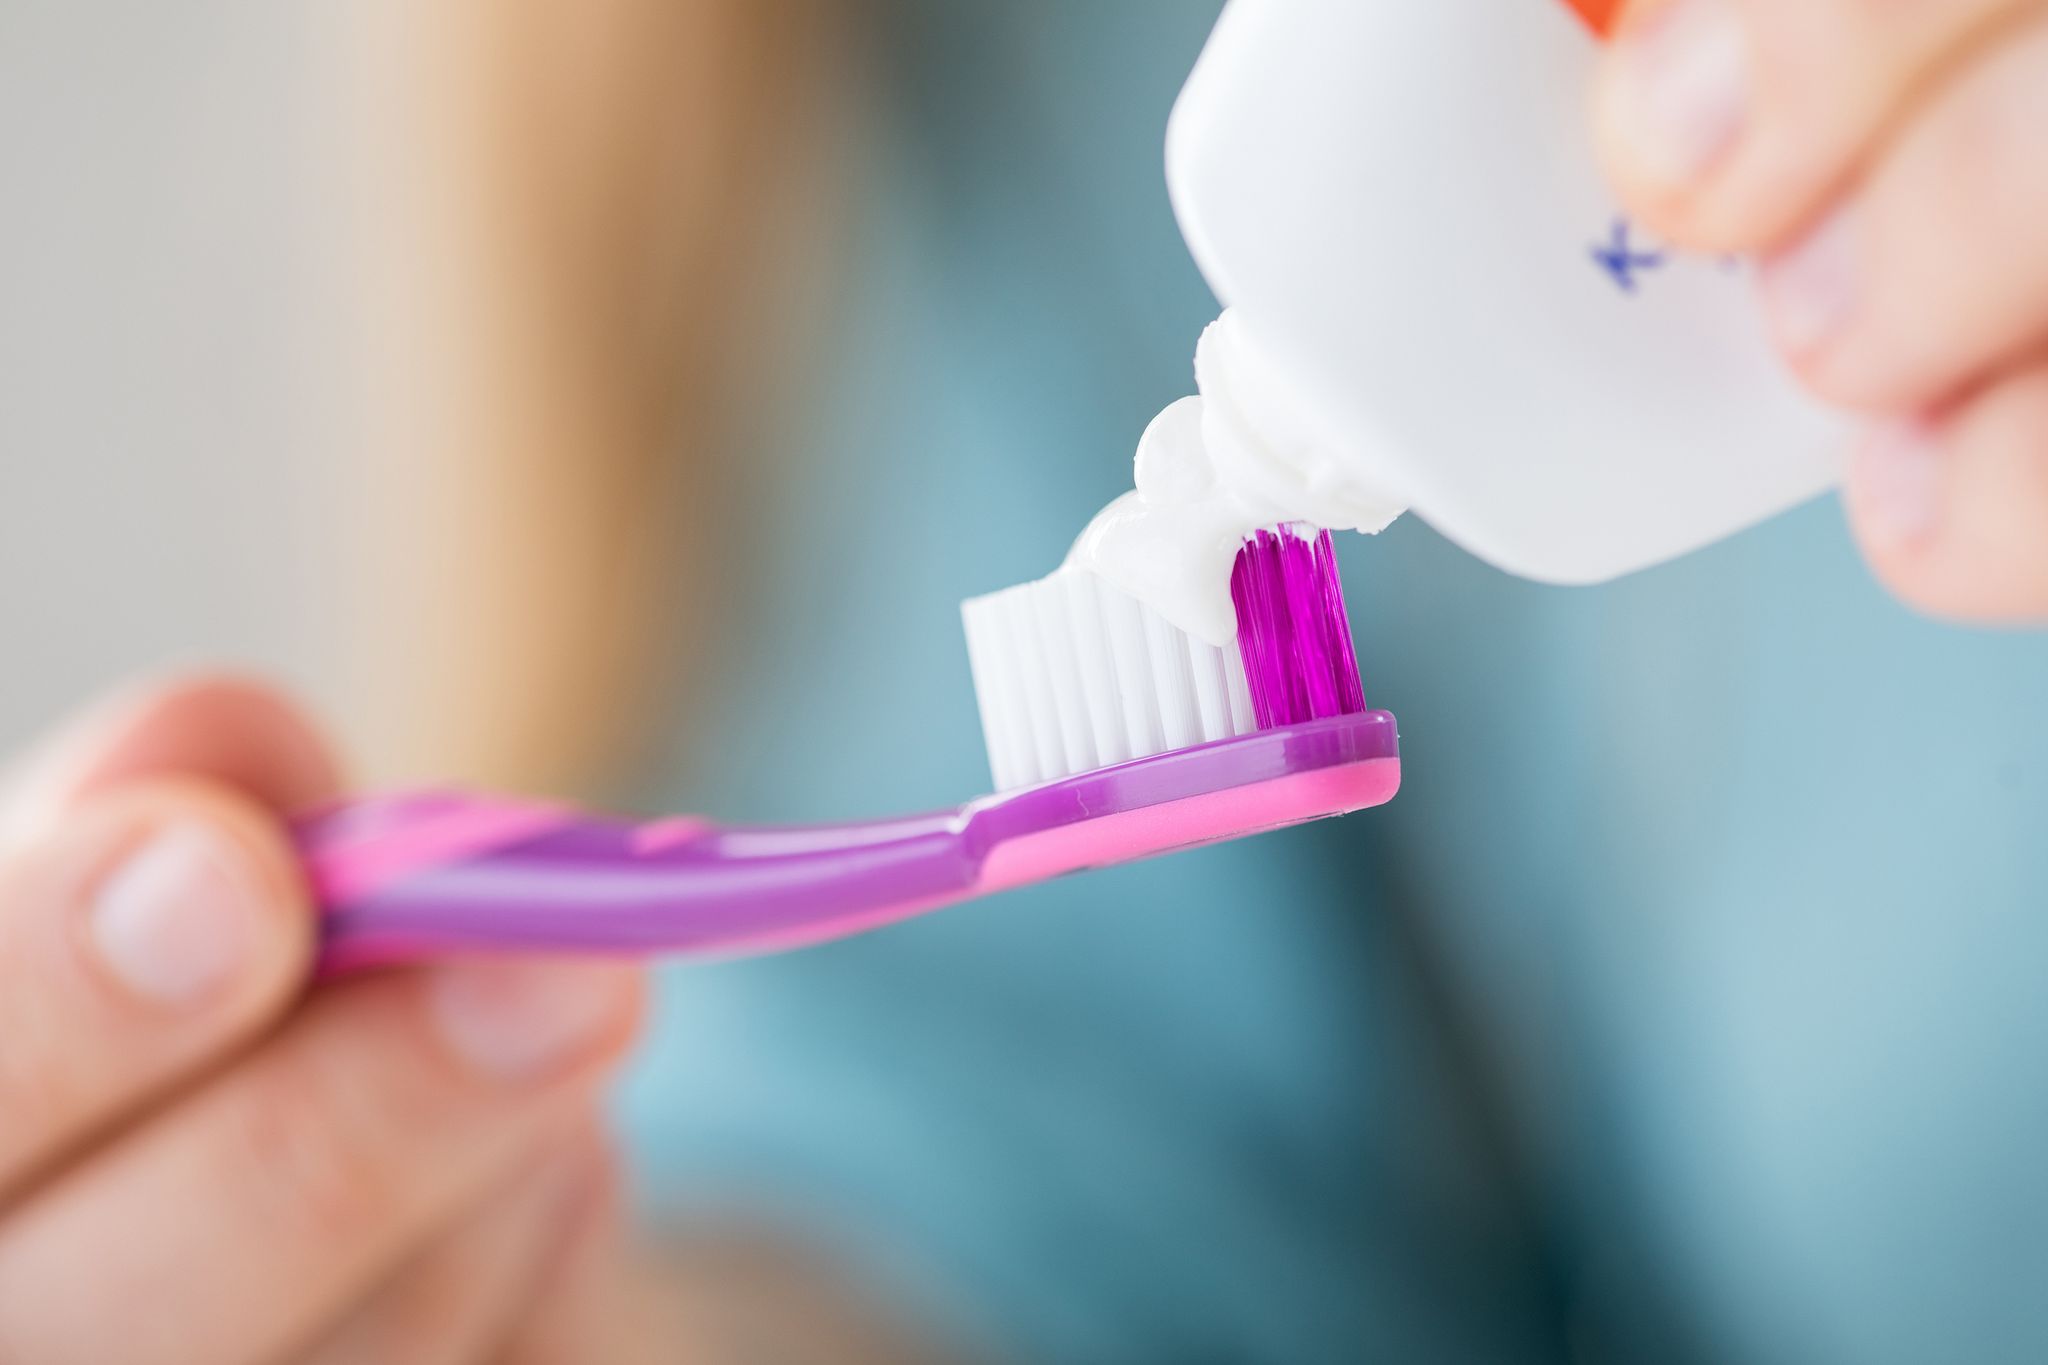 Für das Weiß der Zahnpasta ist in so einigen Fällen der Farbstoff Titandioxid verantwortlich. In Lebensmitteln ist er mittlerweile nicht mehr erlaubt.